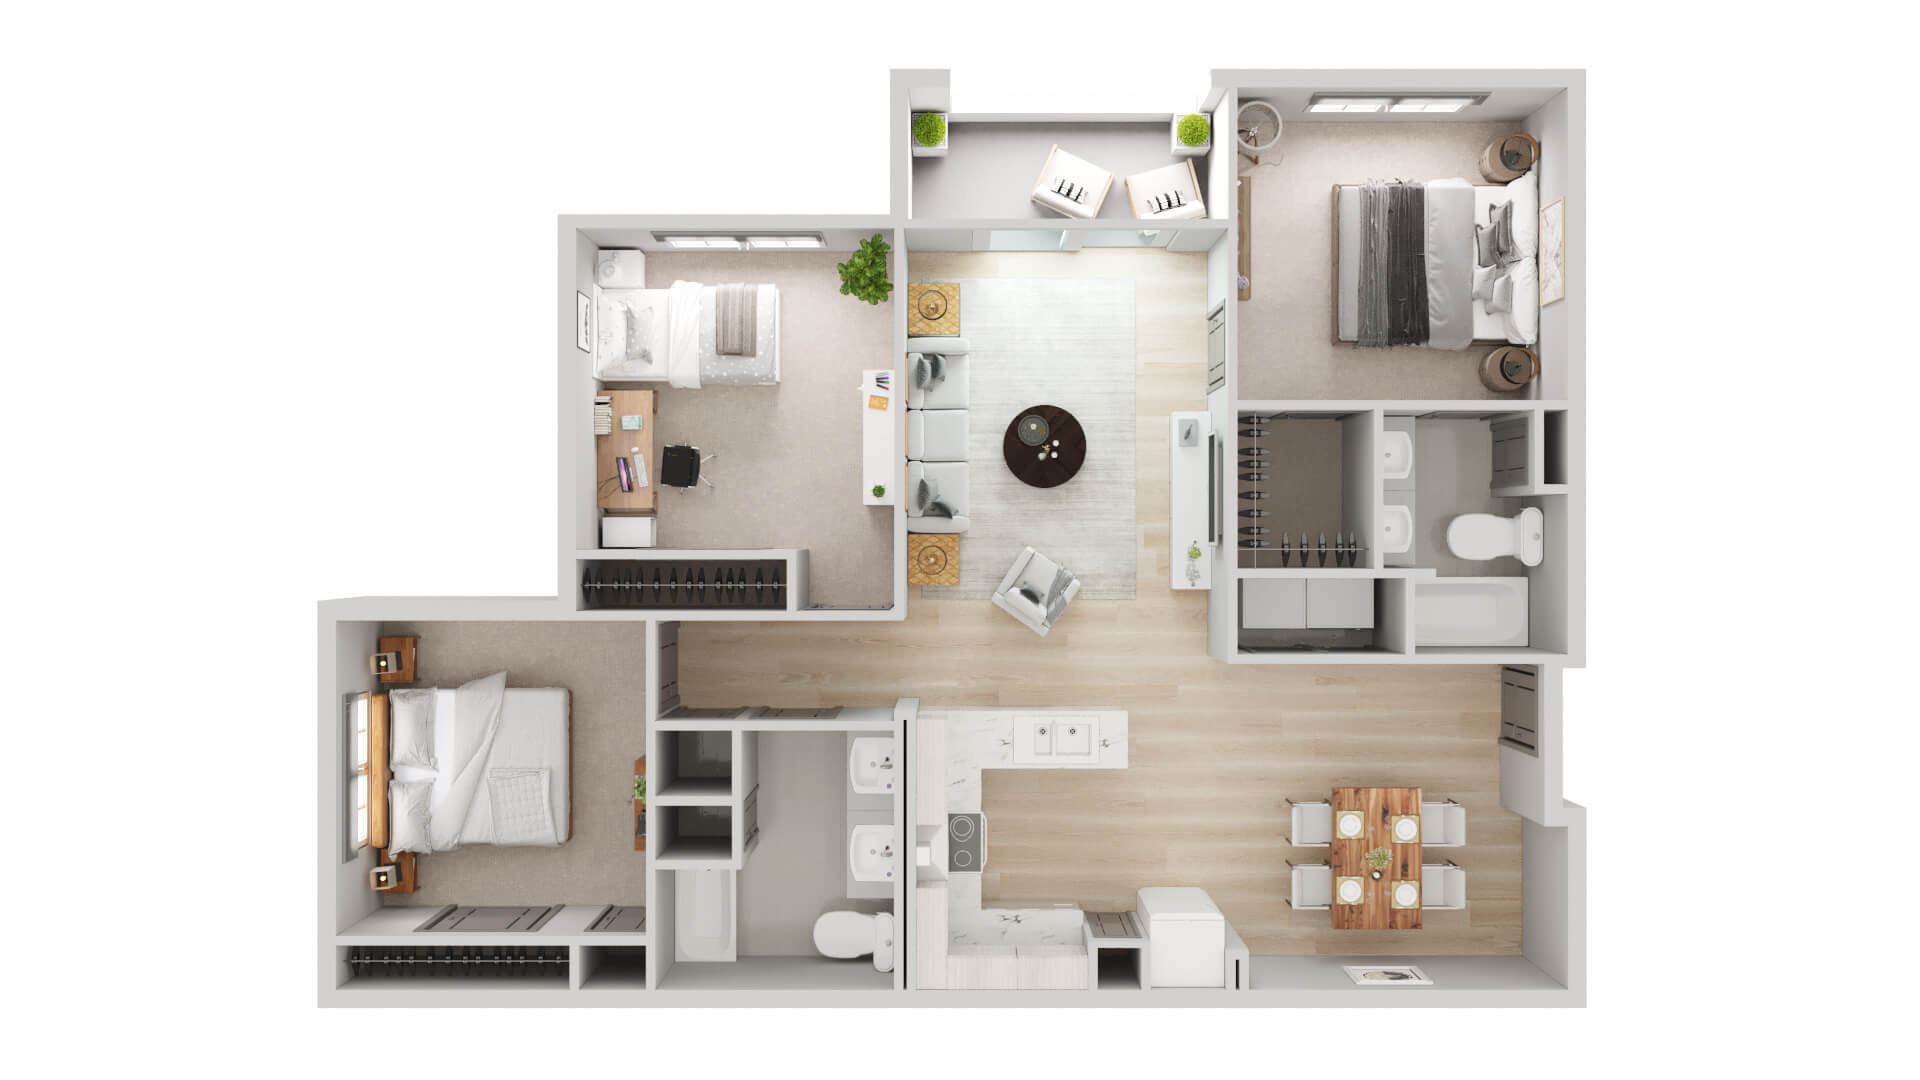 3d floor plan. Black&white floor plan. 3D illustration, sketch, outline.  Stock Illustration | Adobe Stock